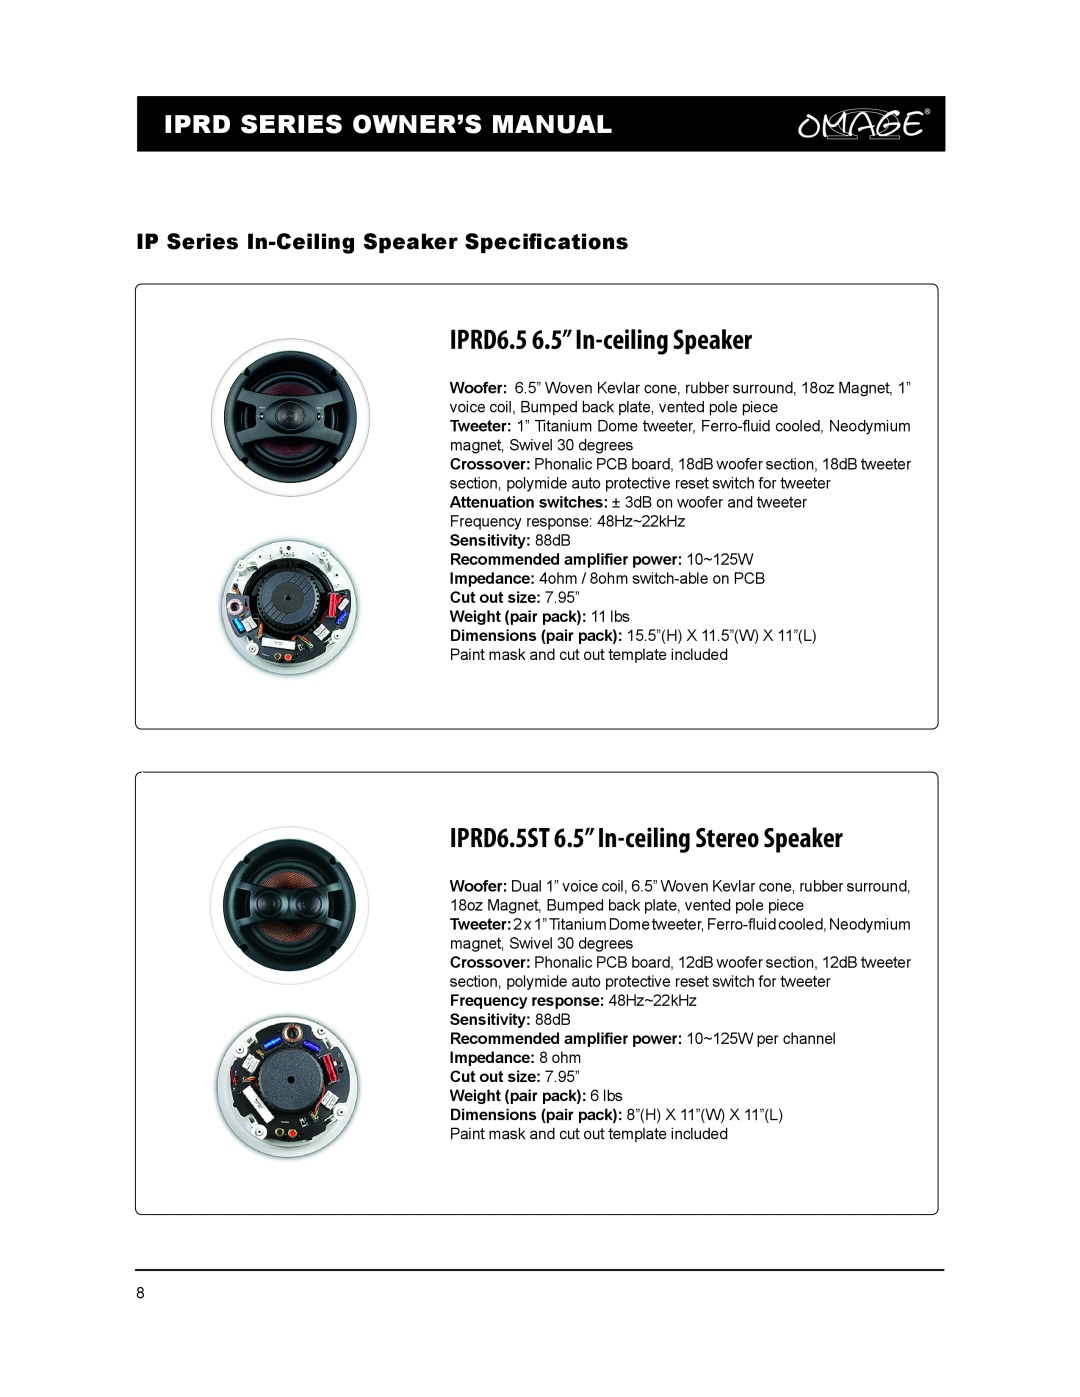 Omage IPRD8 owner manual IPRD6.5 6.5” In-ceilingSpeaker, IPRD6.5ST 6.5” In-ceilingStereo Speaker 